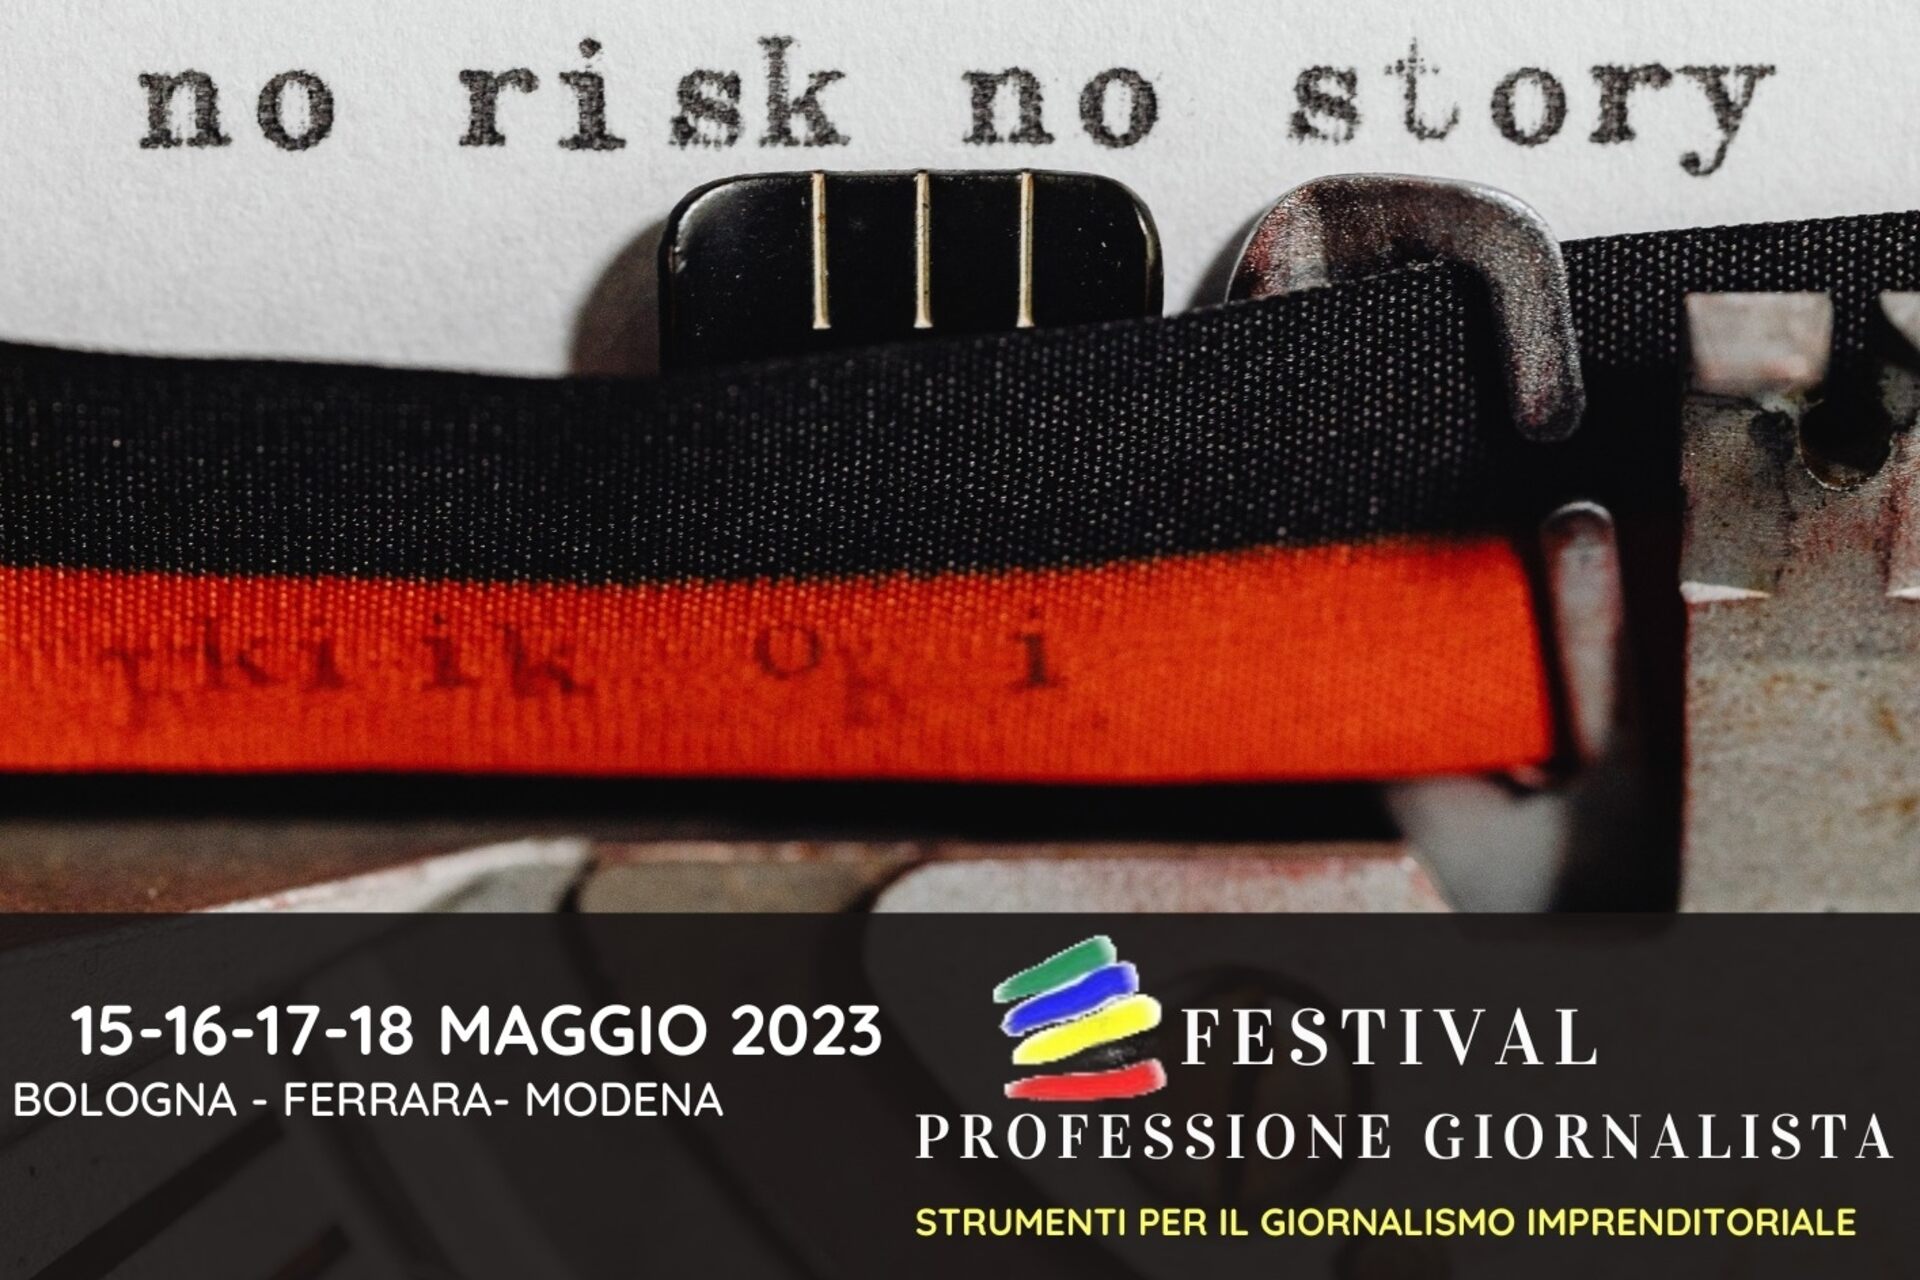 Jurnalistin peşəsi: "Professione Giornalista" festivalının 2023 buraxılışının əsas vizualı (Bolonya, Ferrara, Modena, 15-16-17-18 may)